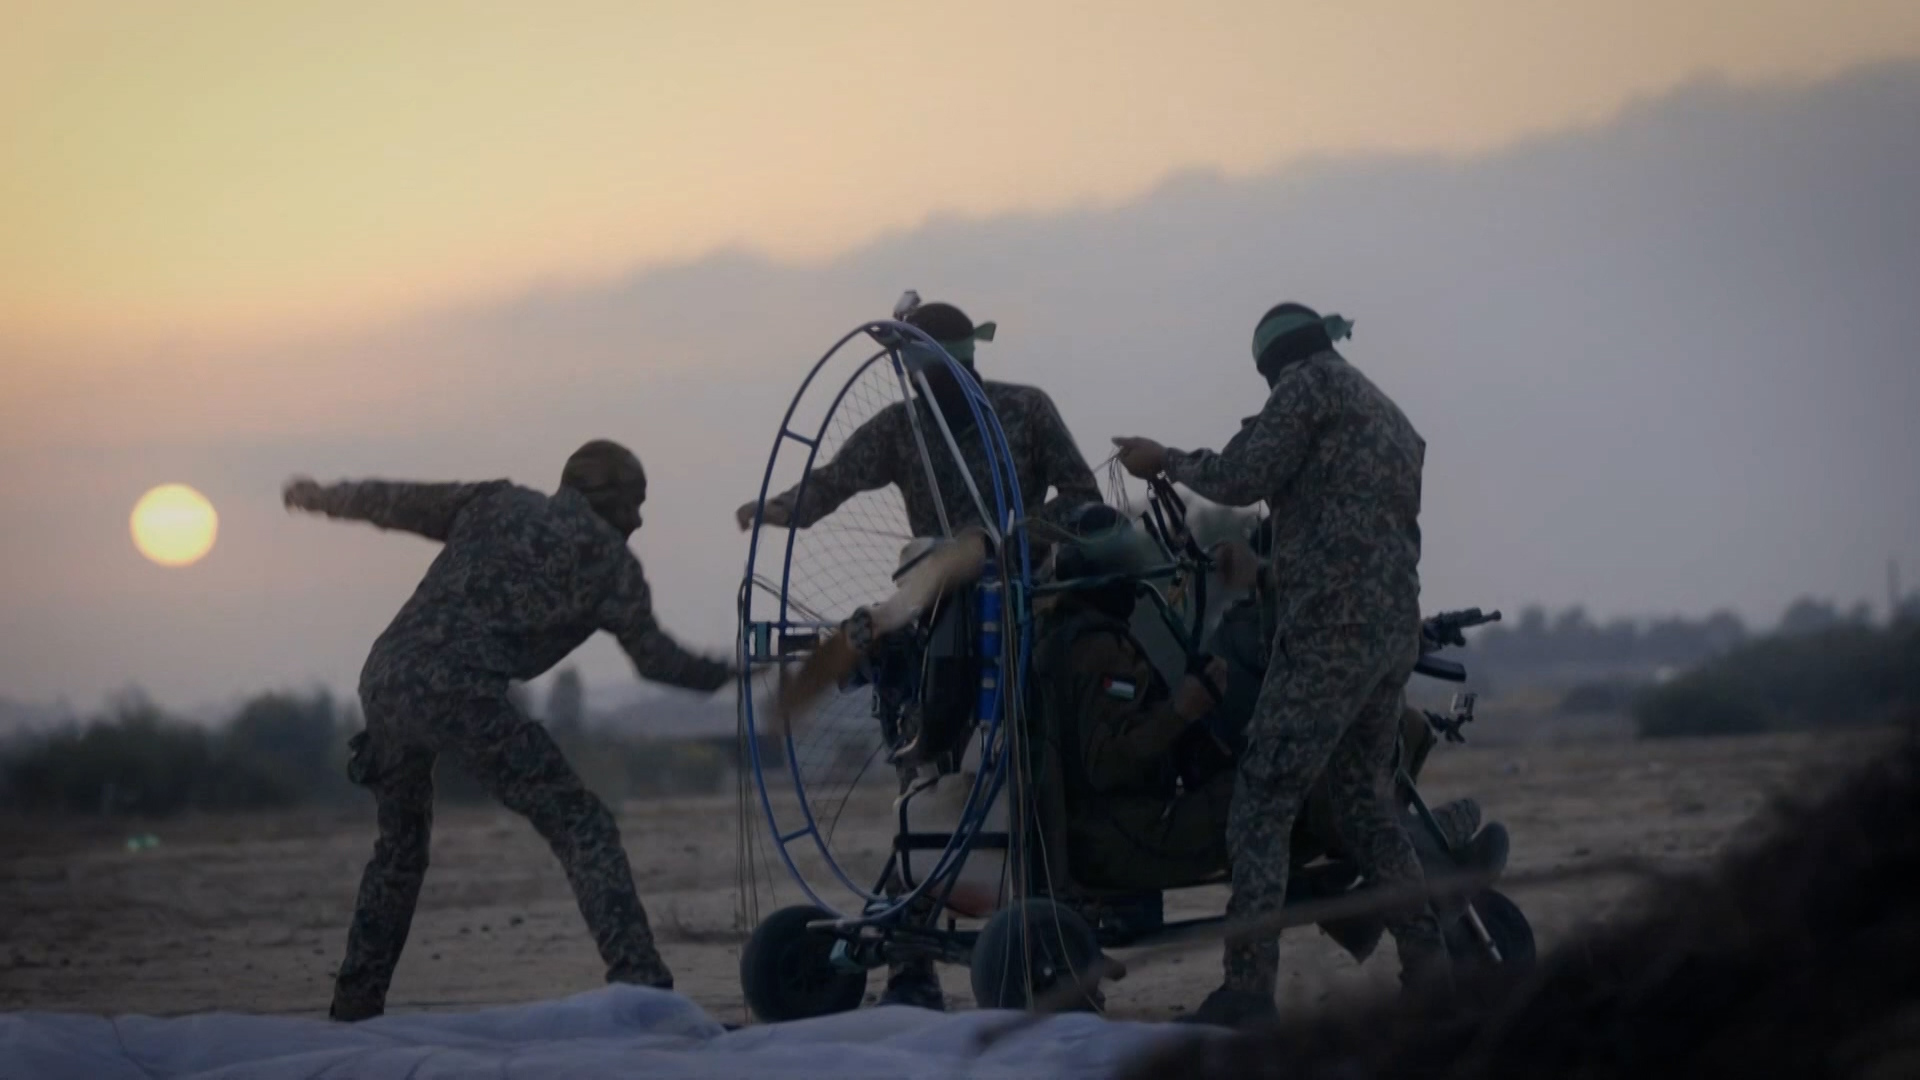 الأدوات العسكرية للمقاومة في معركة “طوفان الأقصى” | أخبار سياسة – البوكس نيوز